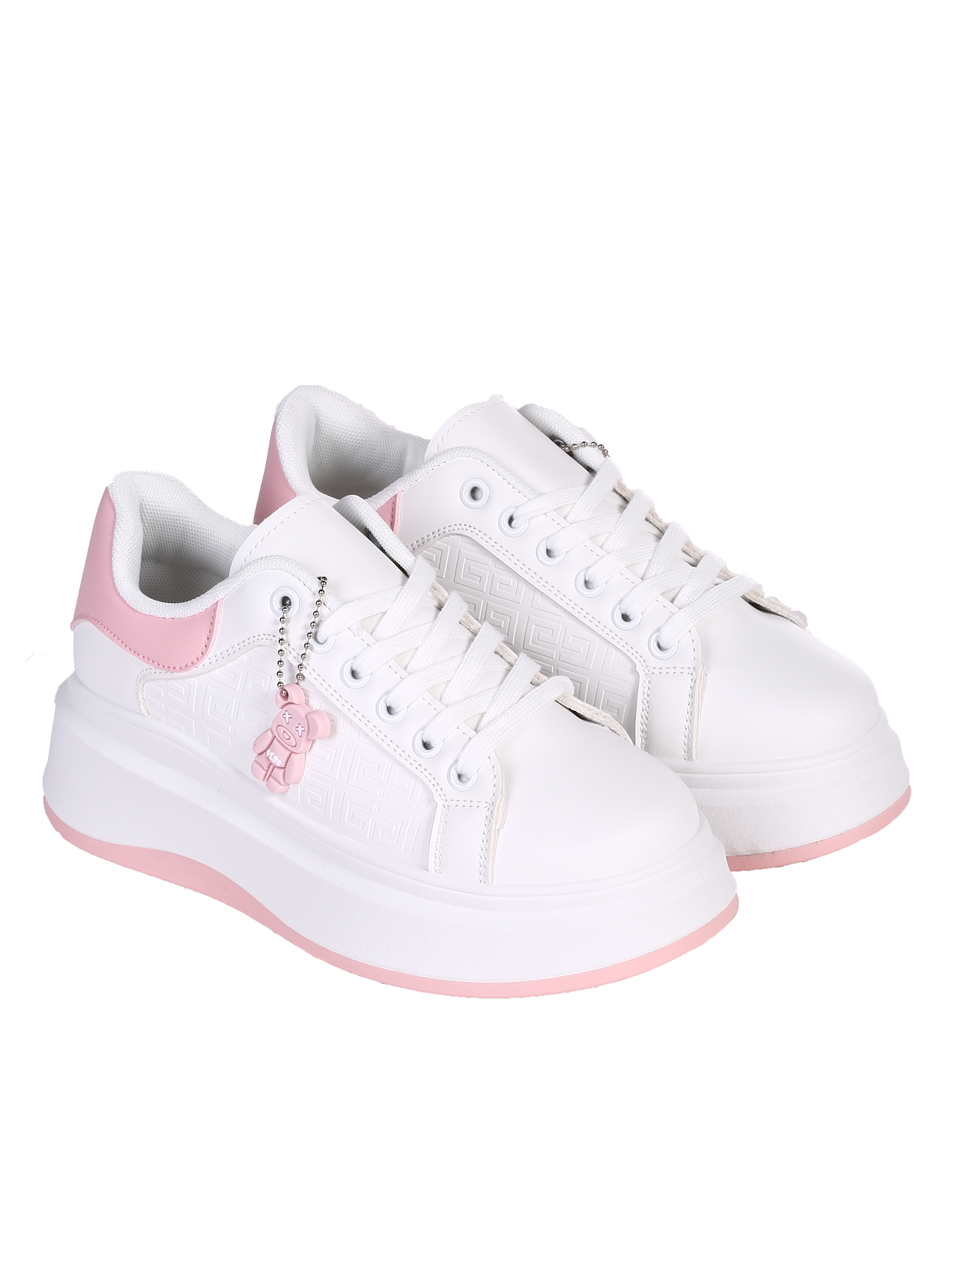 Ежедневни дамски обувки на платформа в бял/розов цвят 3U-24071 white/pink